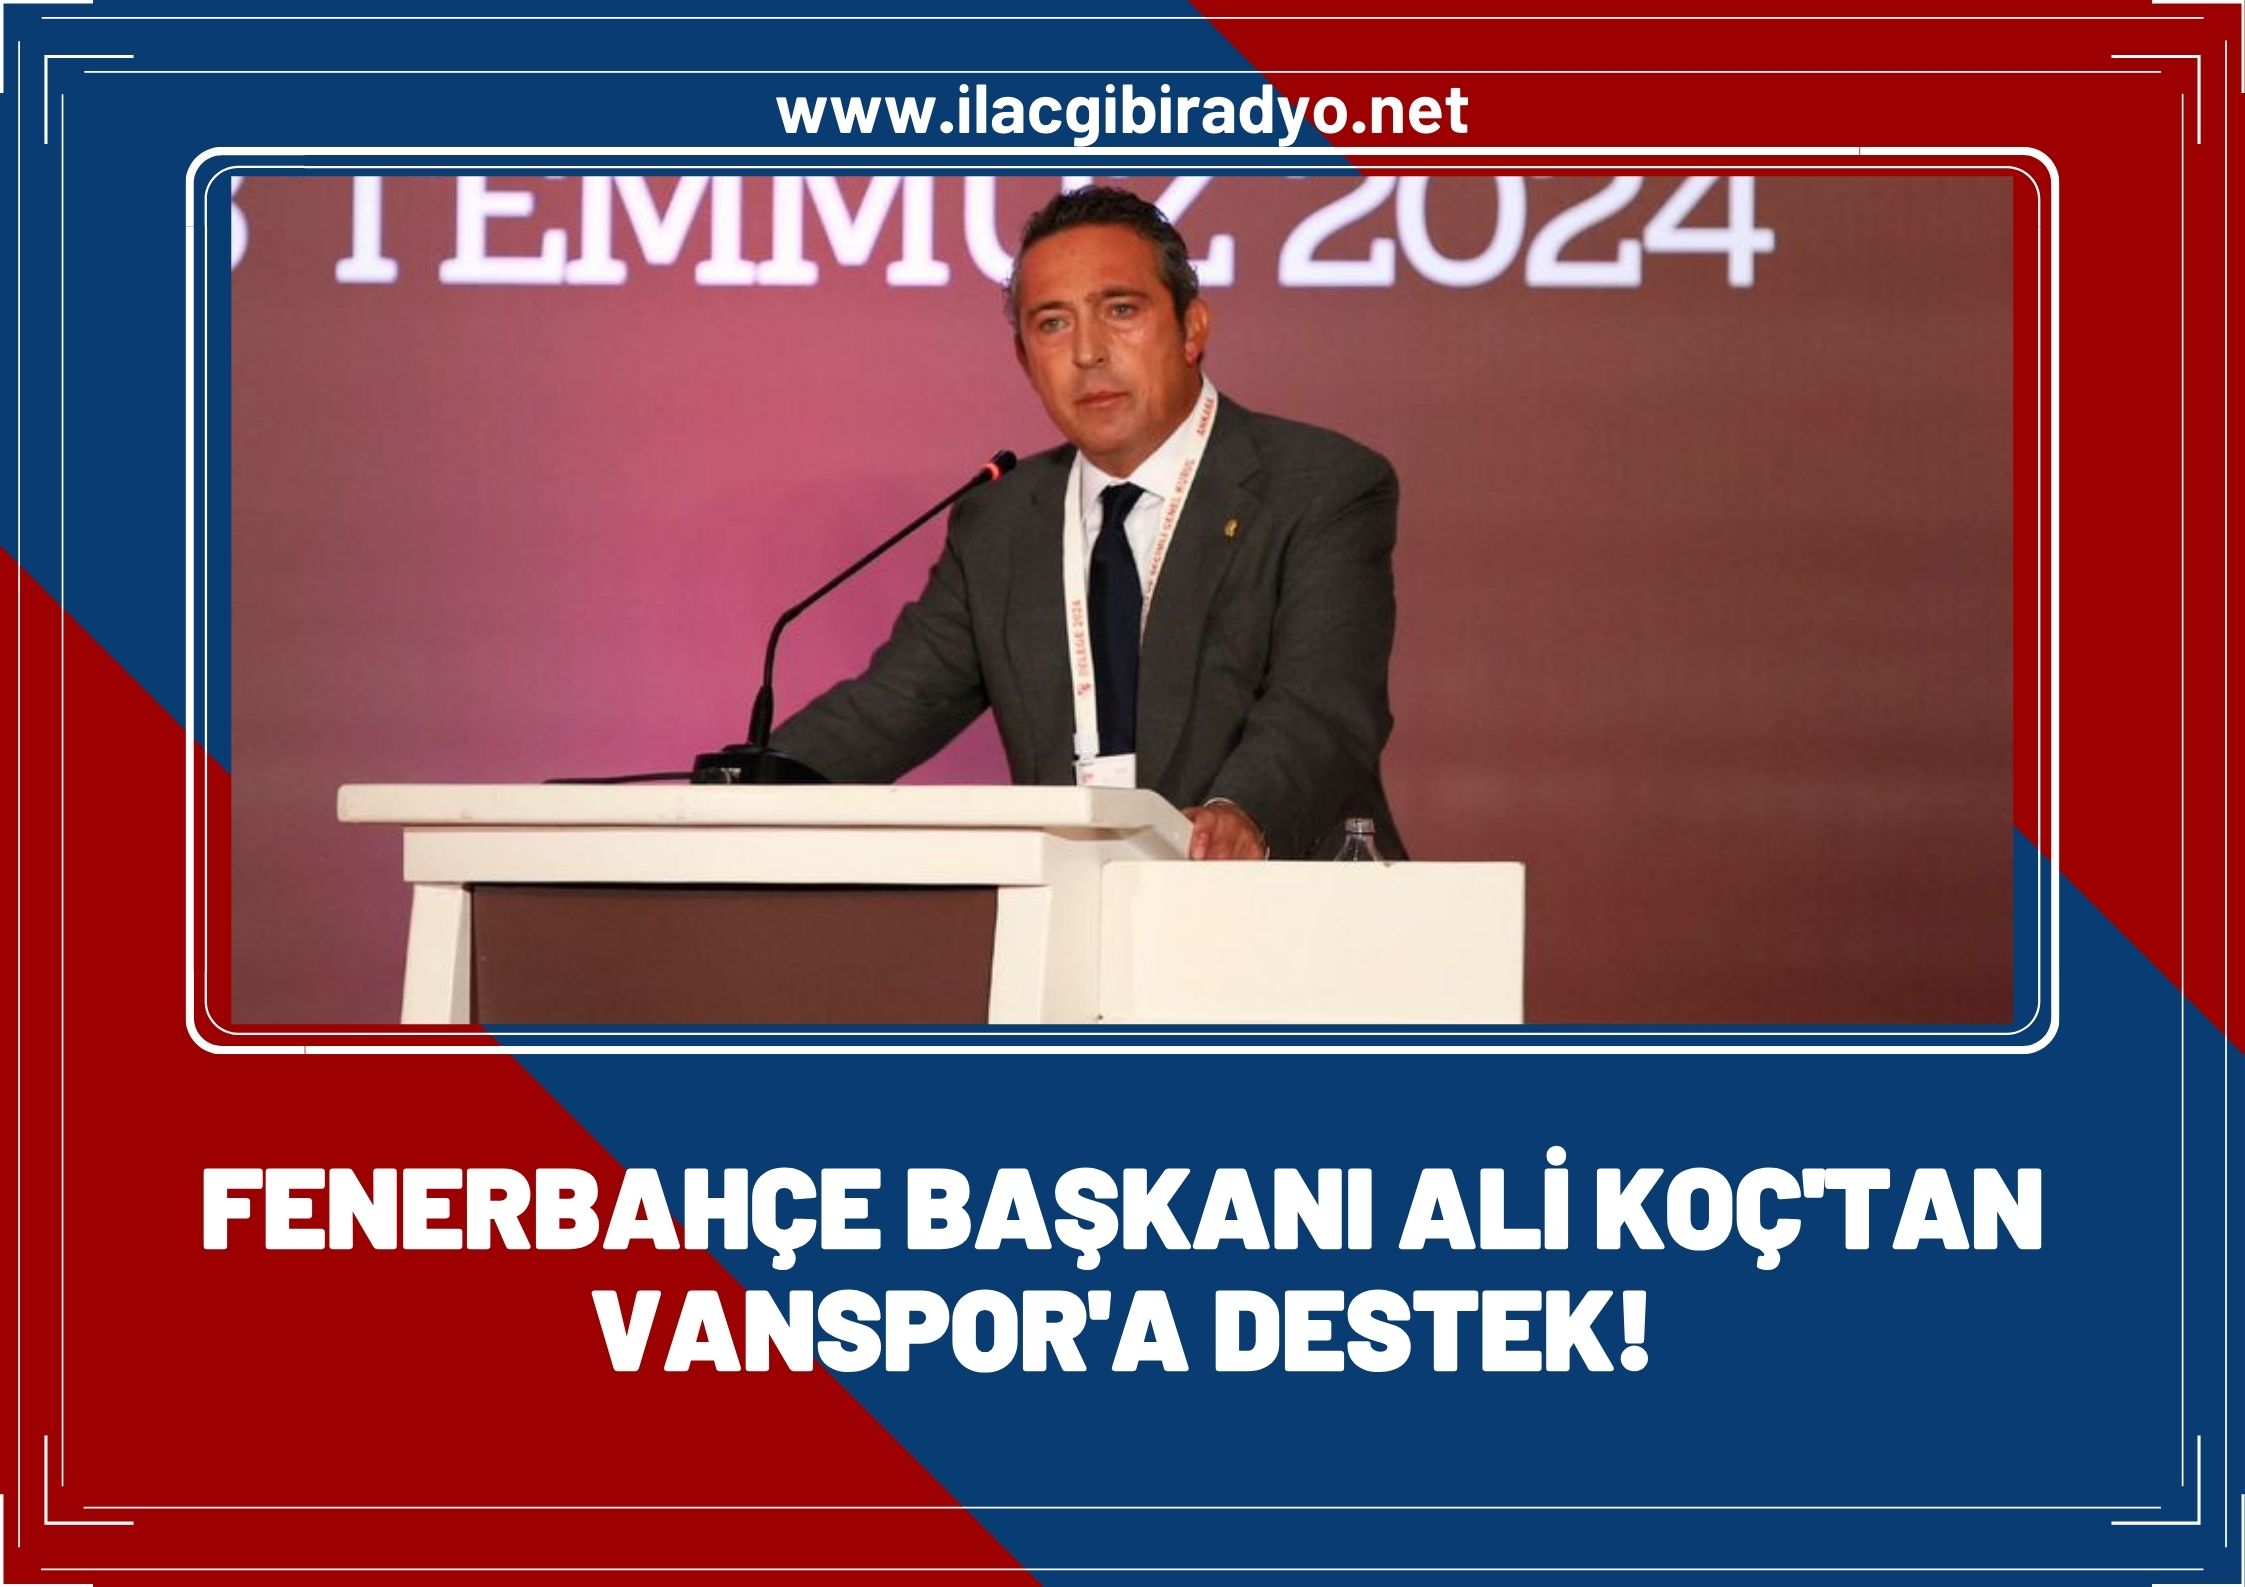 Fenerbahçe Başkanı Ali Koç’tan Vanspor’a büyük destek!